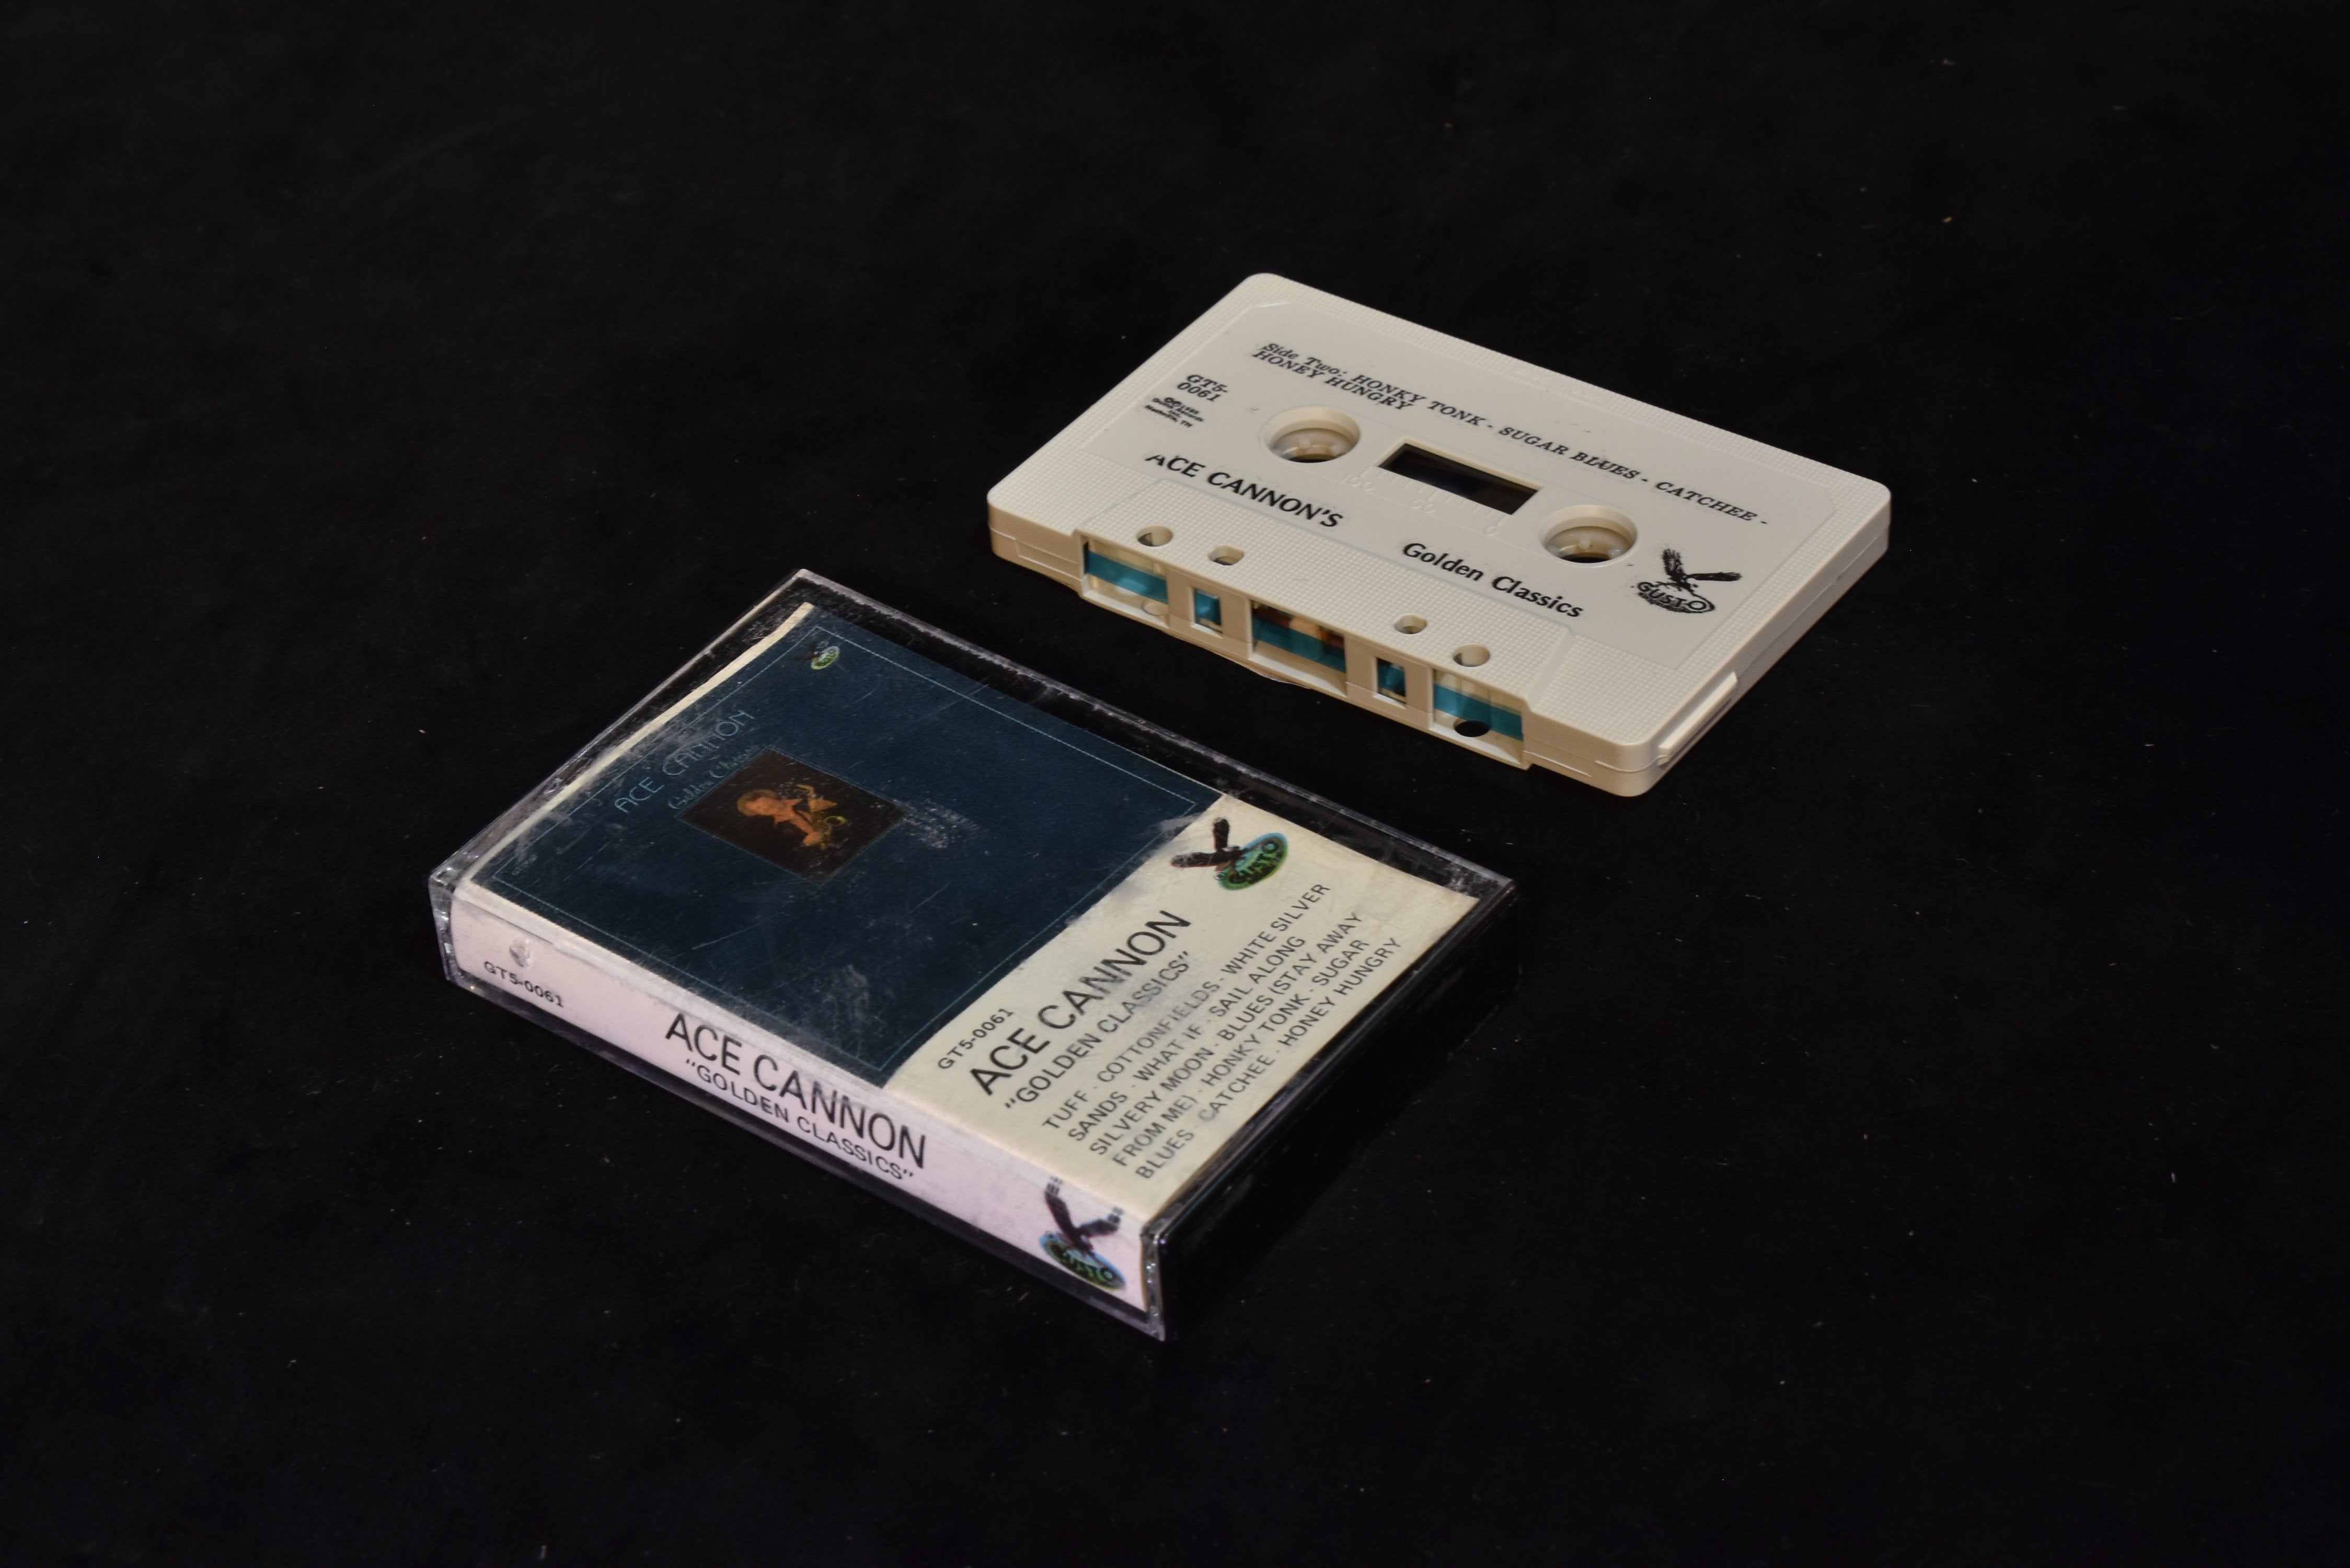 Ace cannon golden classics cassette tape